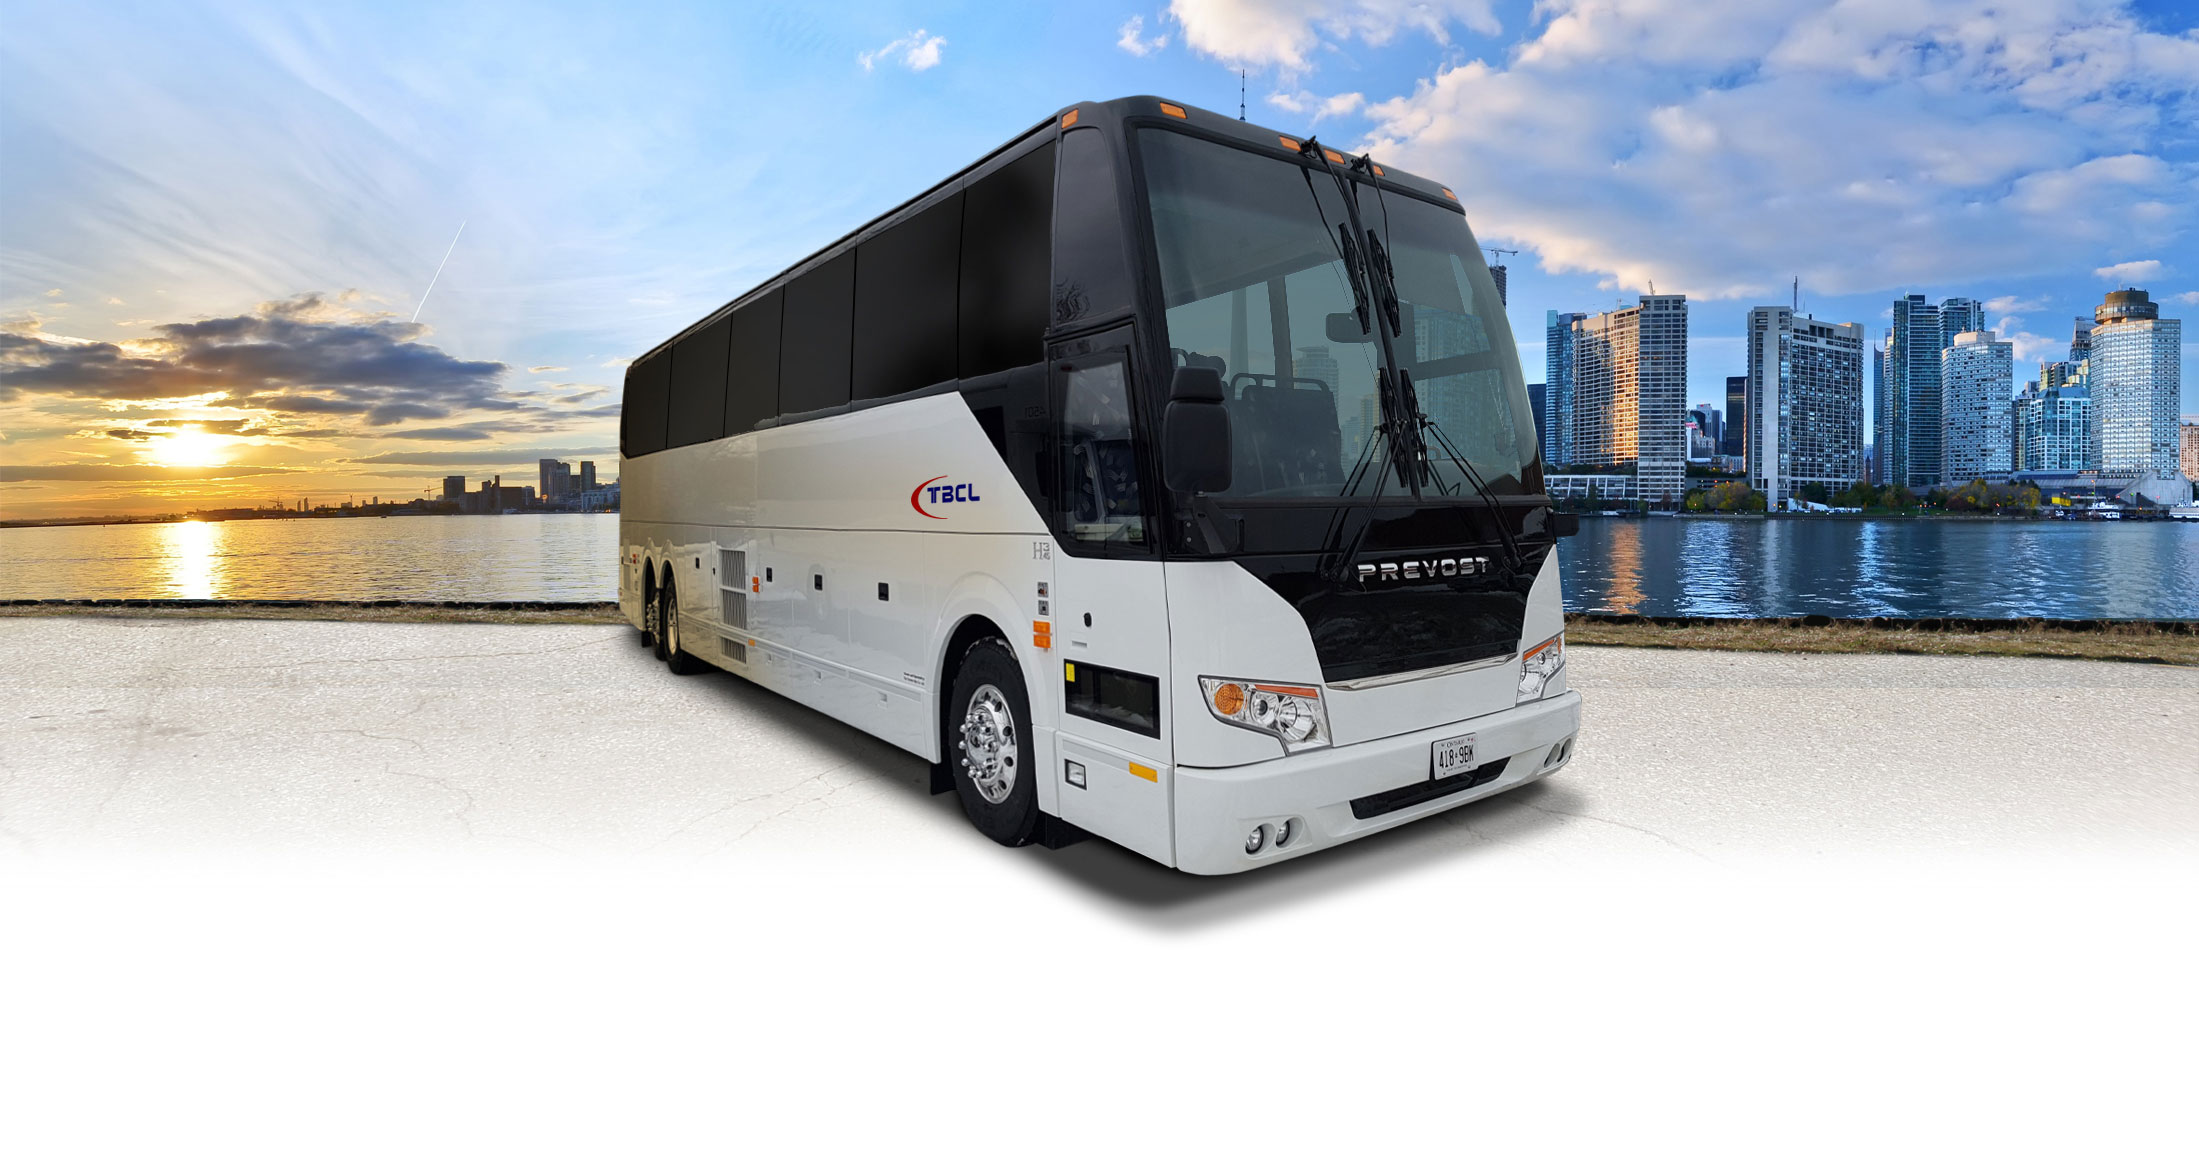 toronto bus tour price